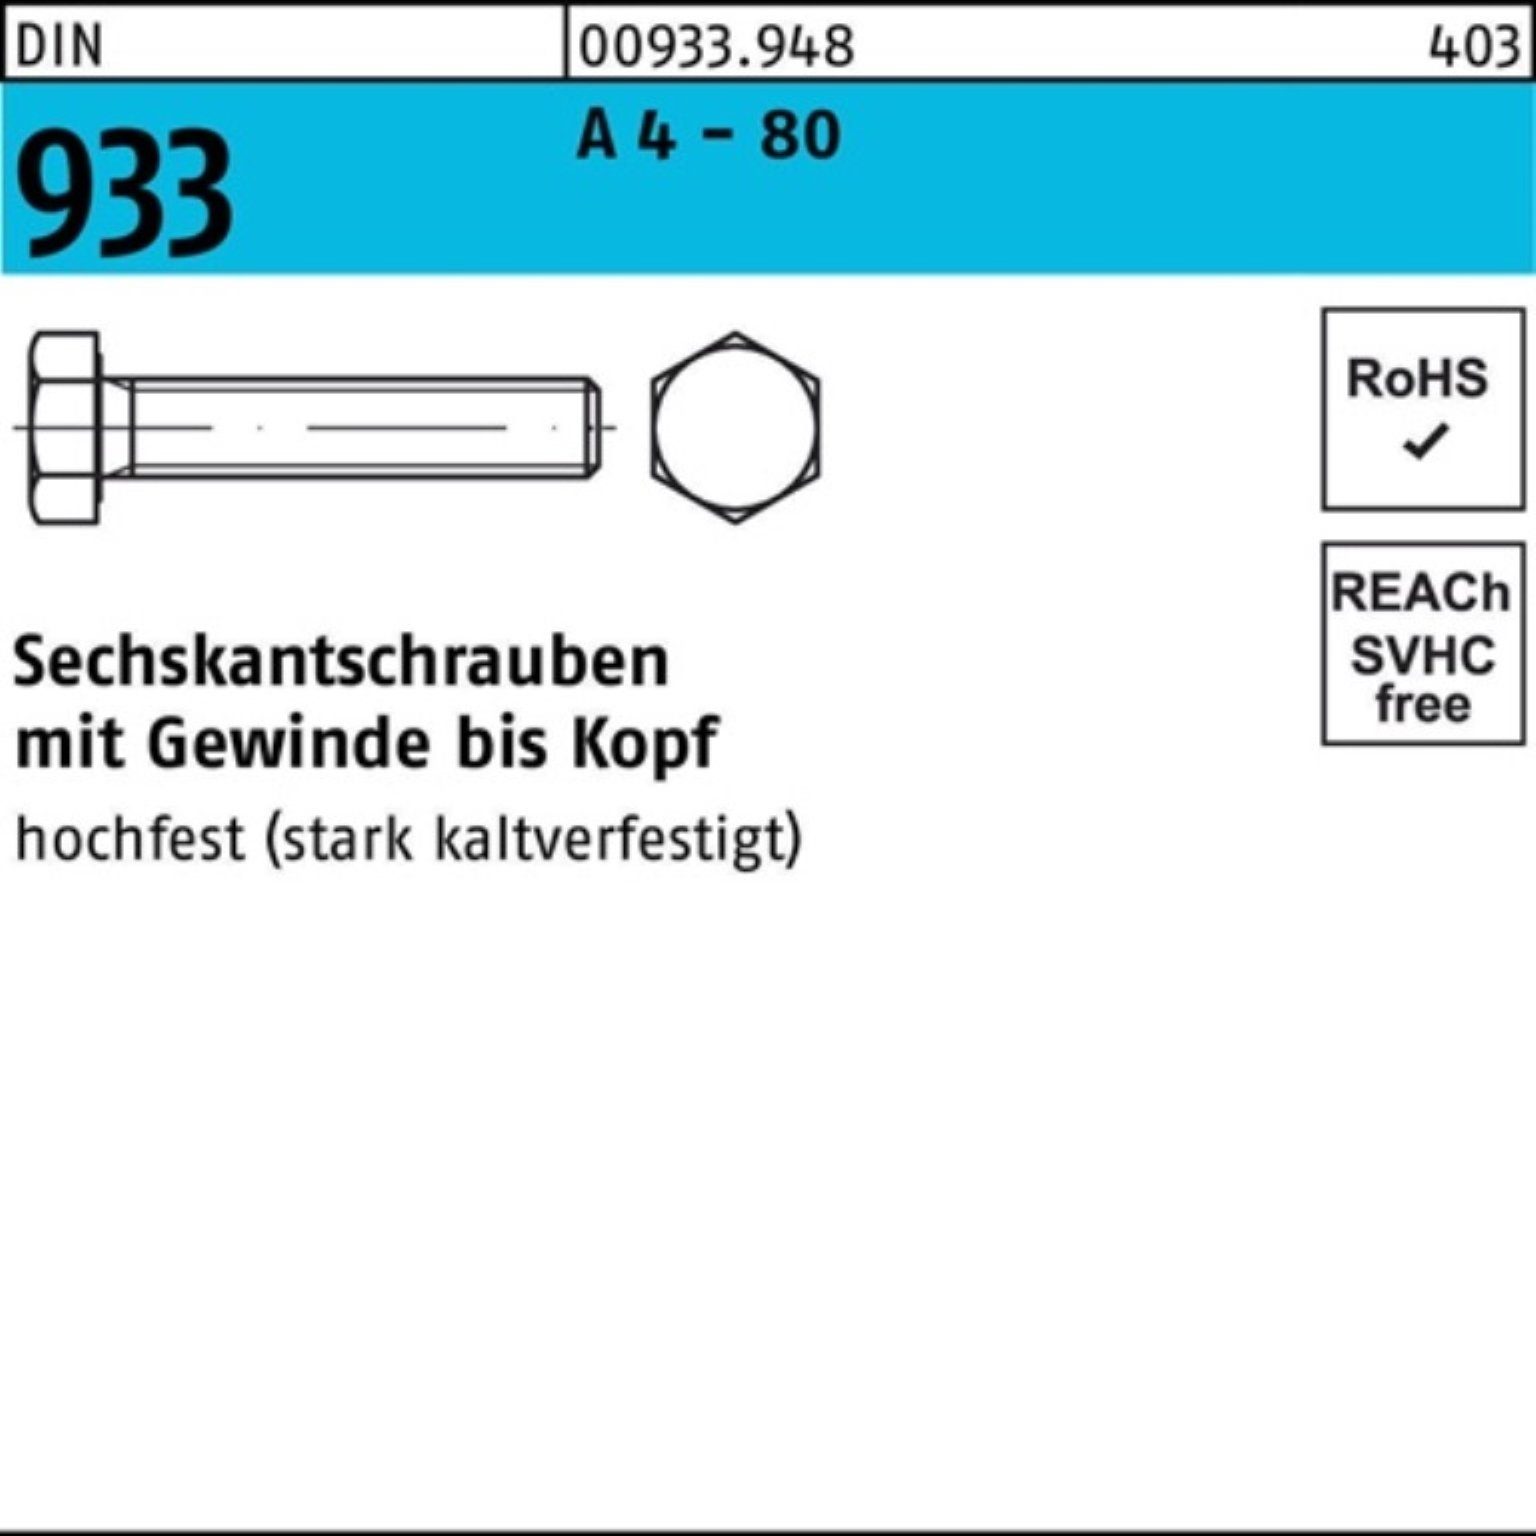 Sechskantschraube 933 100 Stück M24x Reyher Sechskantschraube A DIN 1 Pack 100er - 80 4 DIN VG